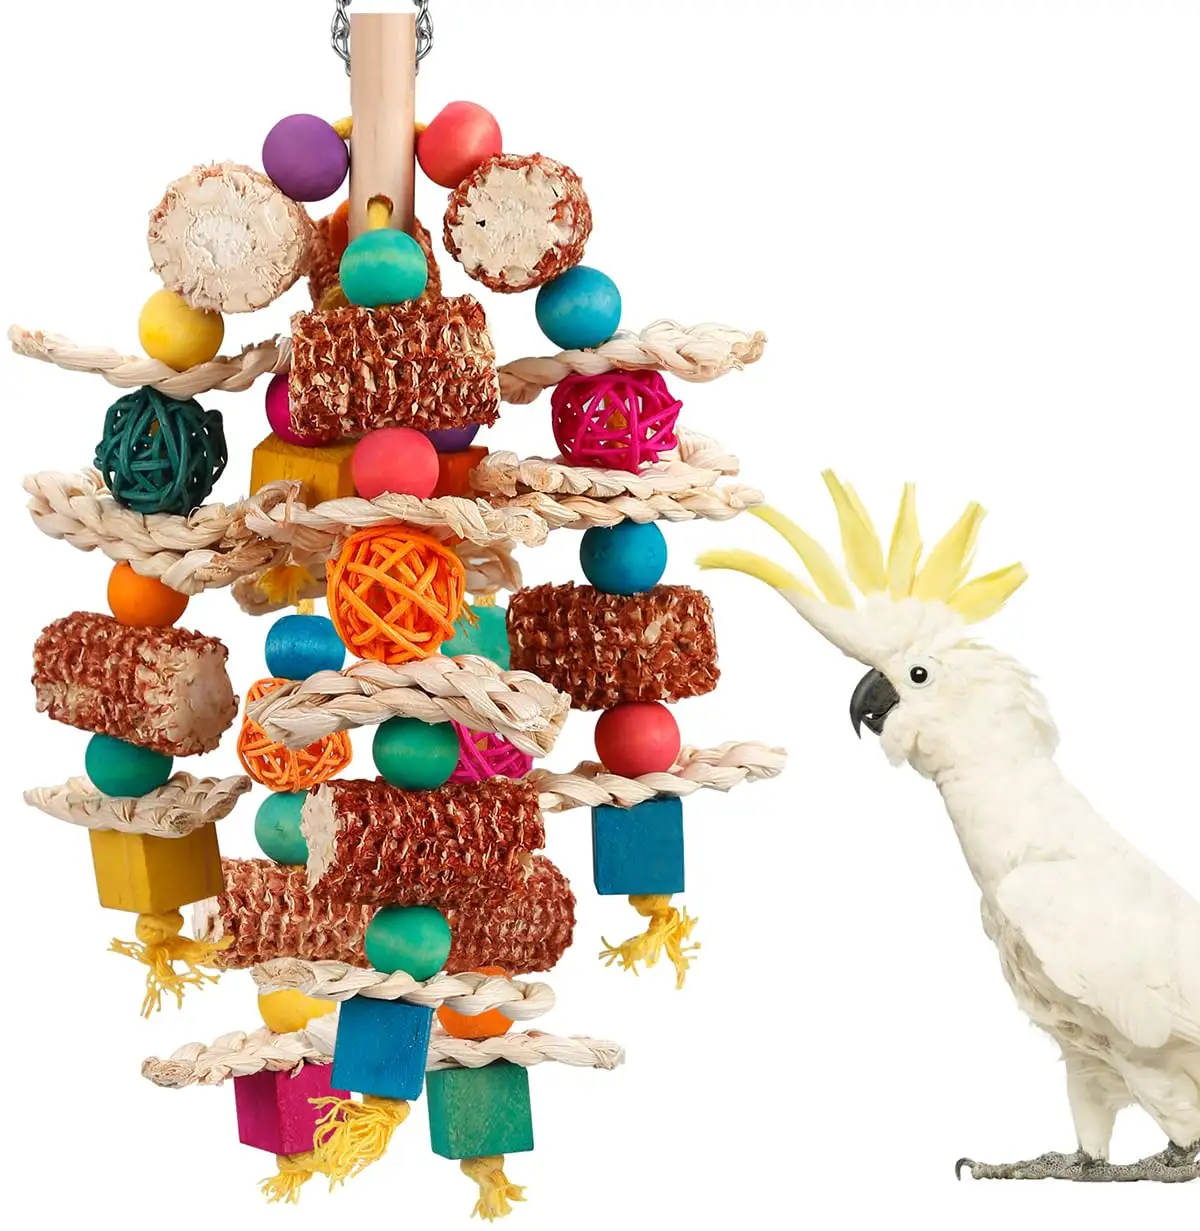 บล็อกไม้ทรงซังข้าวโพดธรรมชาติสีสันสดใสของเล่นแบบแขวนสำหรับนกของเล่นให้นกแก้วเคี้ยว